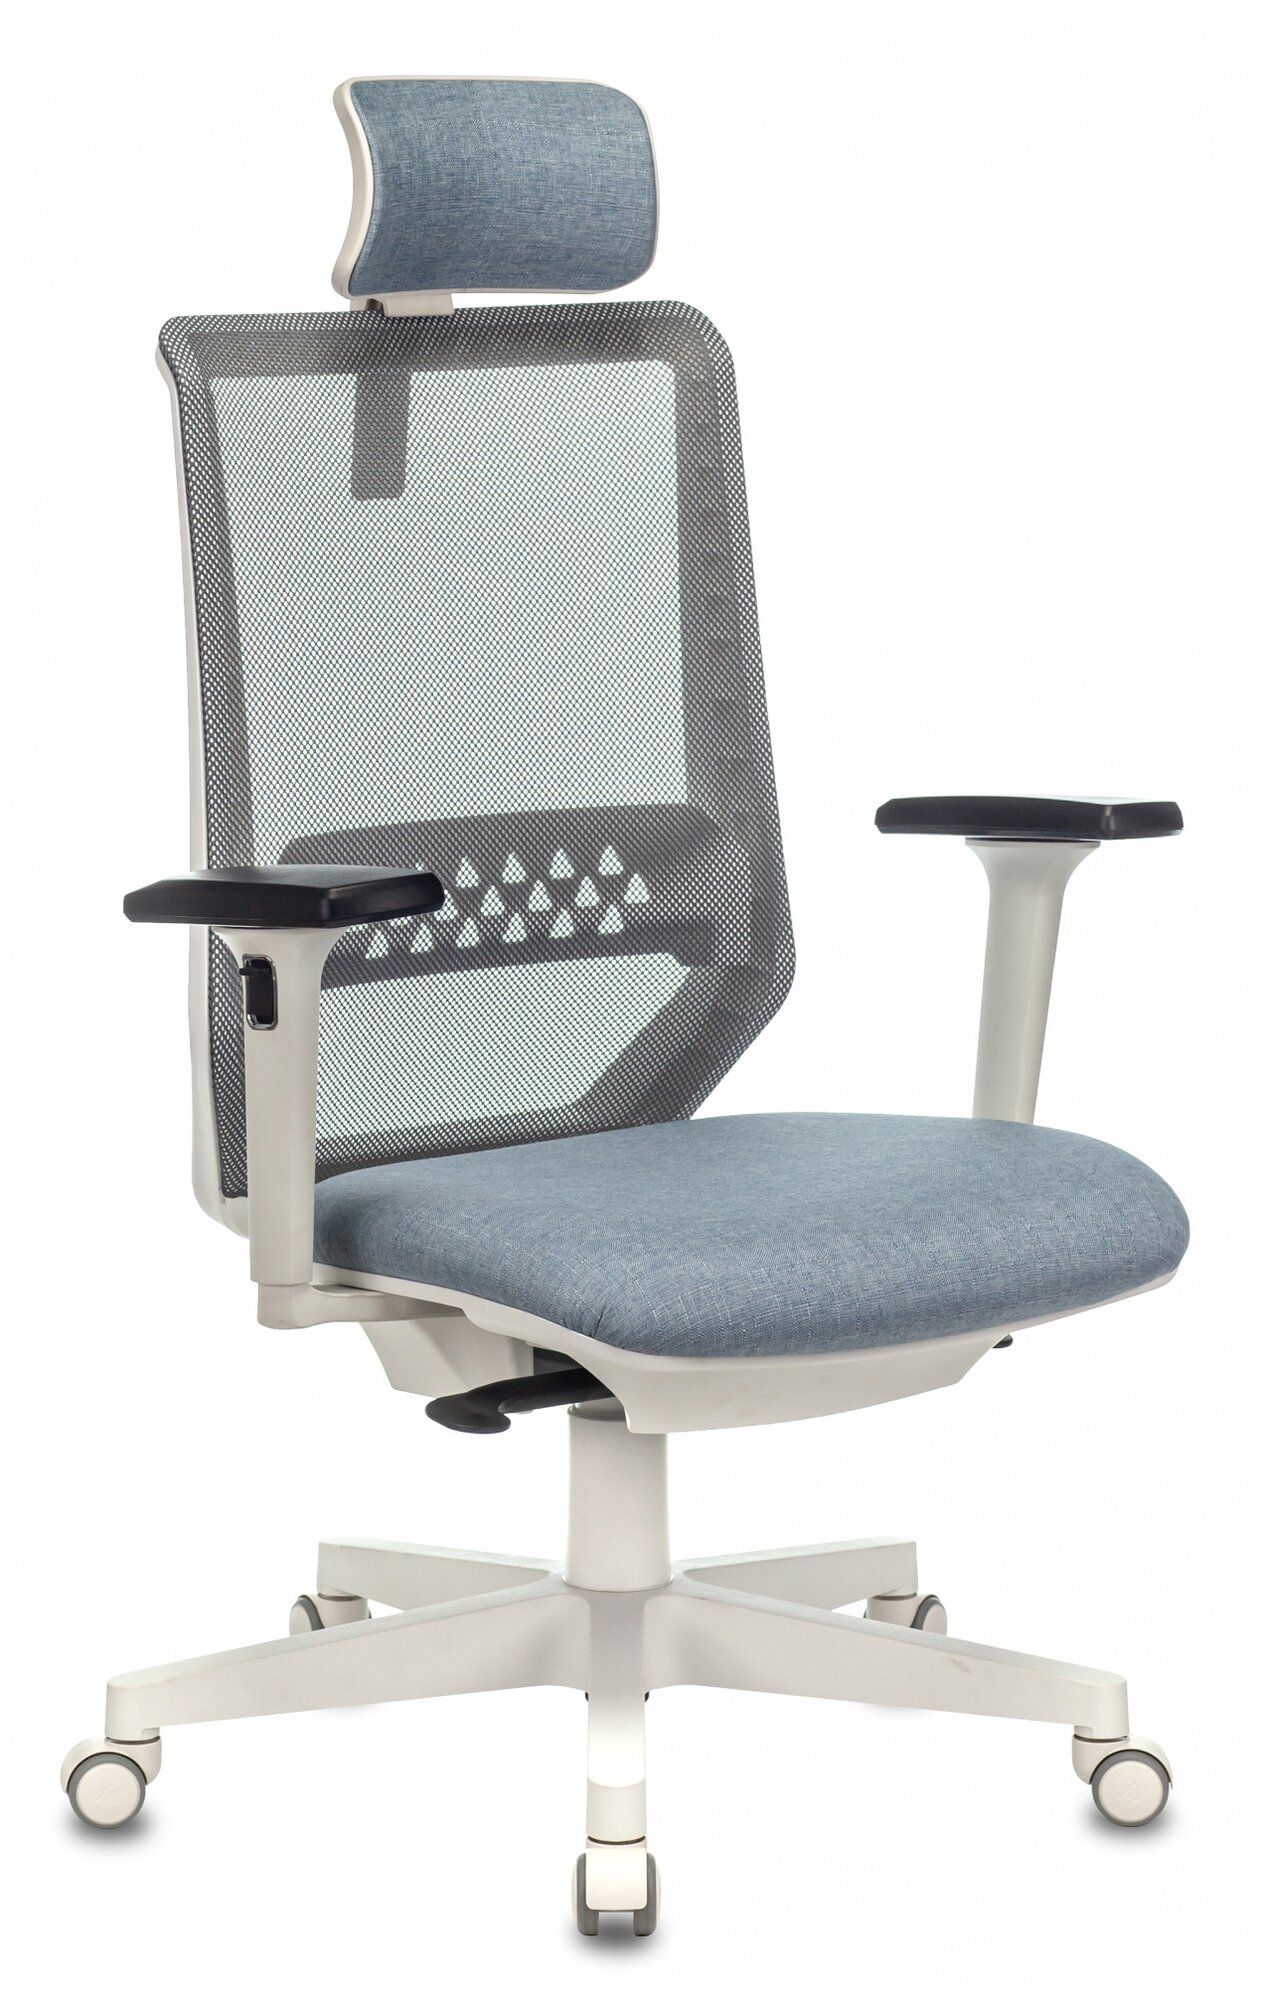 Компьютерное кресло Бюрократ EXPERT для руководителя, обивка: текстиль, цвет: серый/голубой